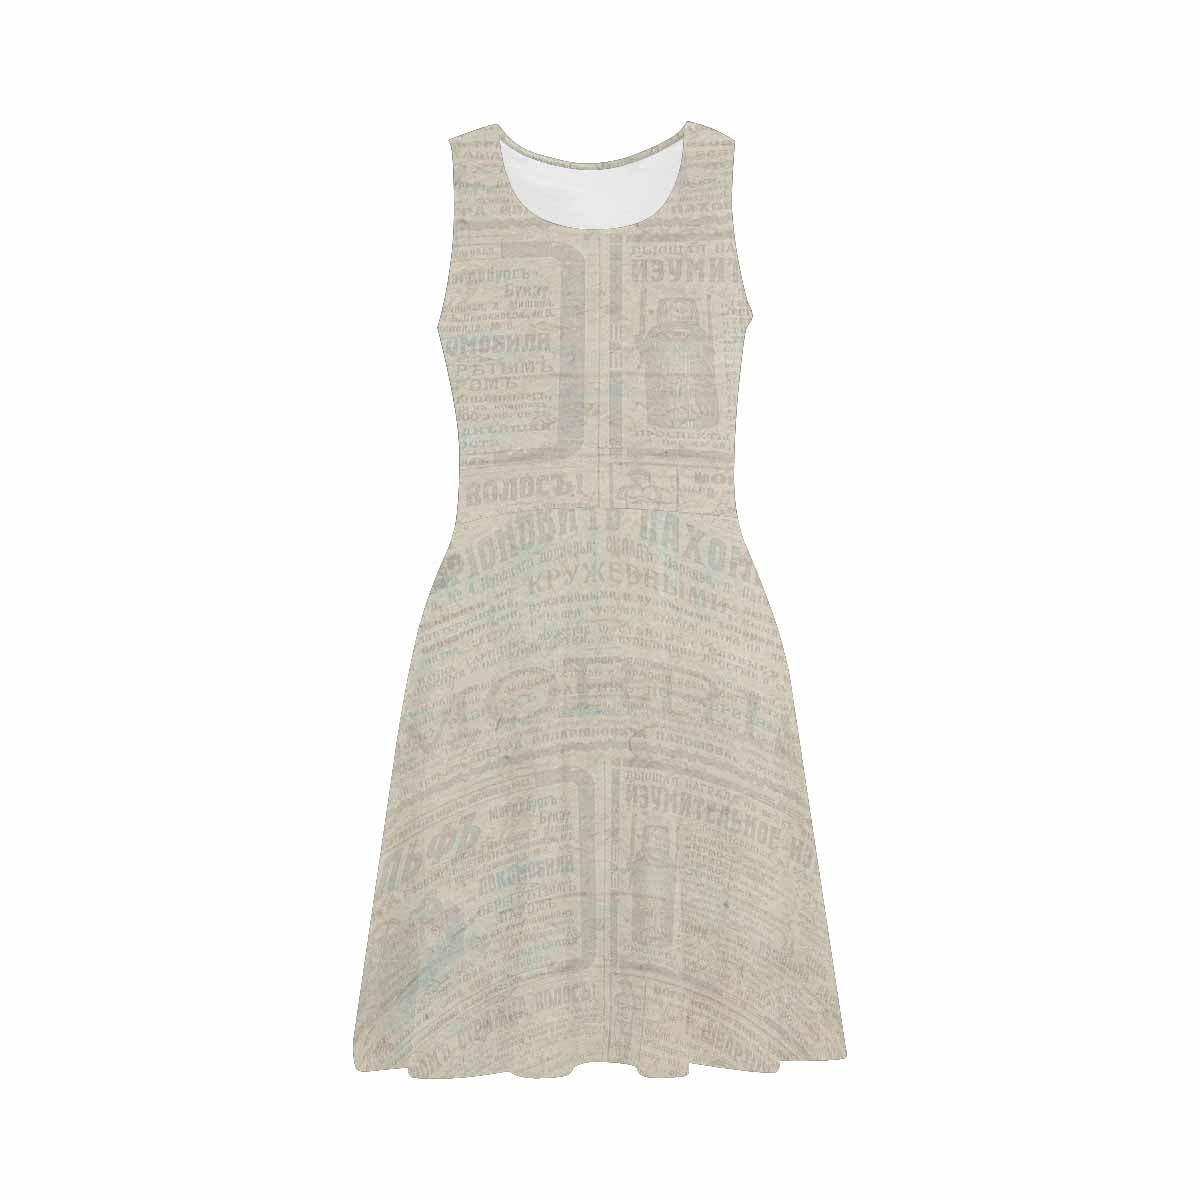 Antique General summer dress, MODEL 09534, design 30